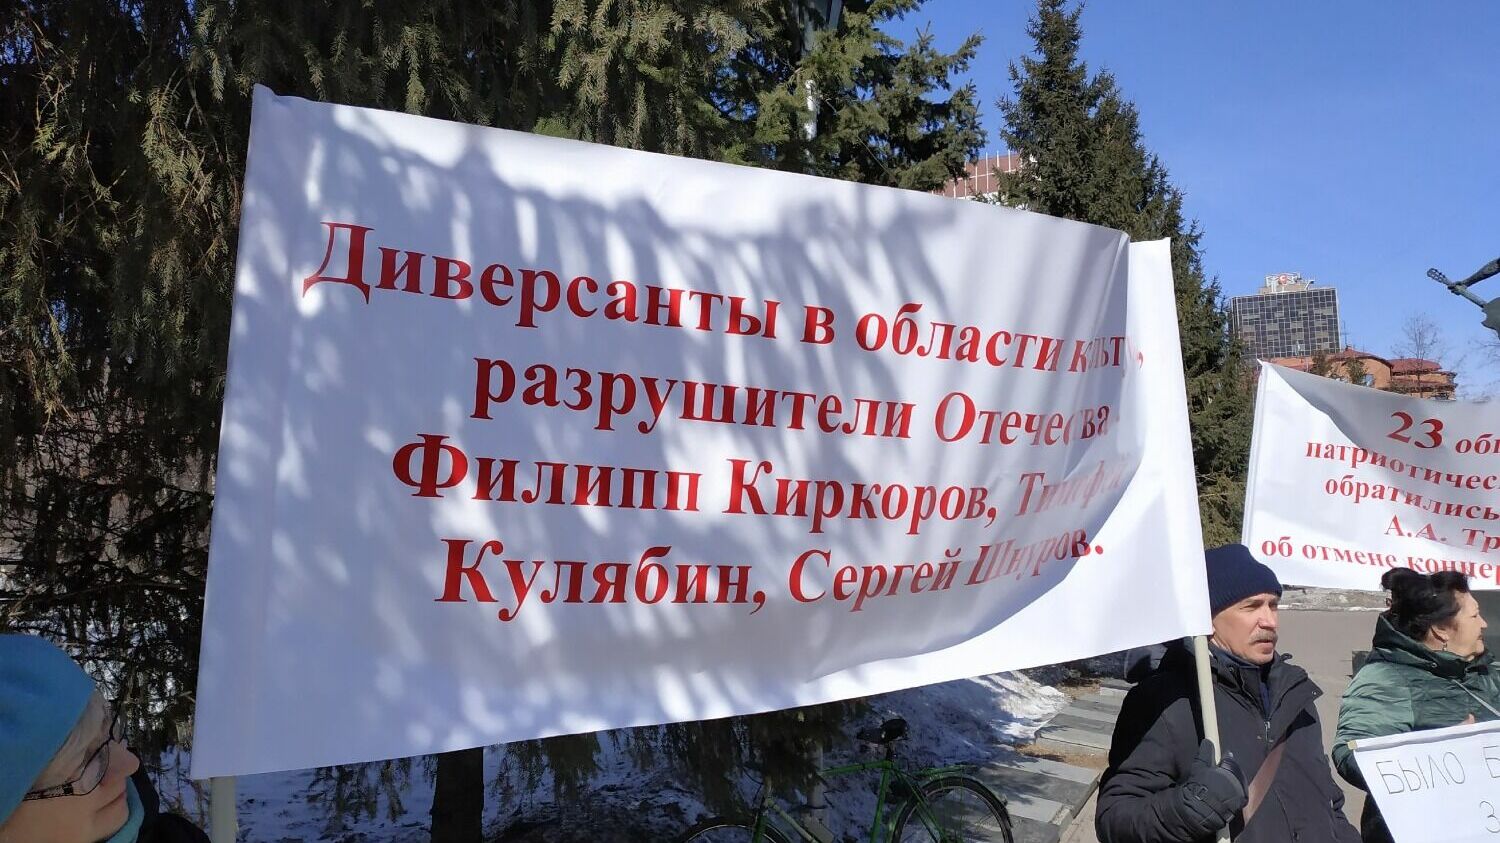 Киркорову активисты вменяют деятельность по разрушению России